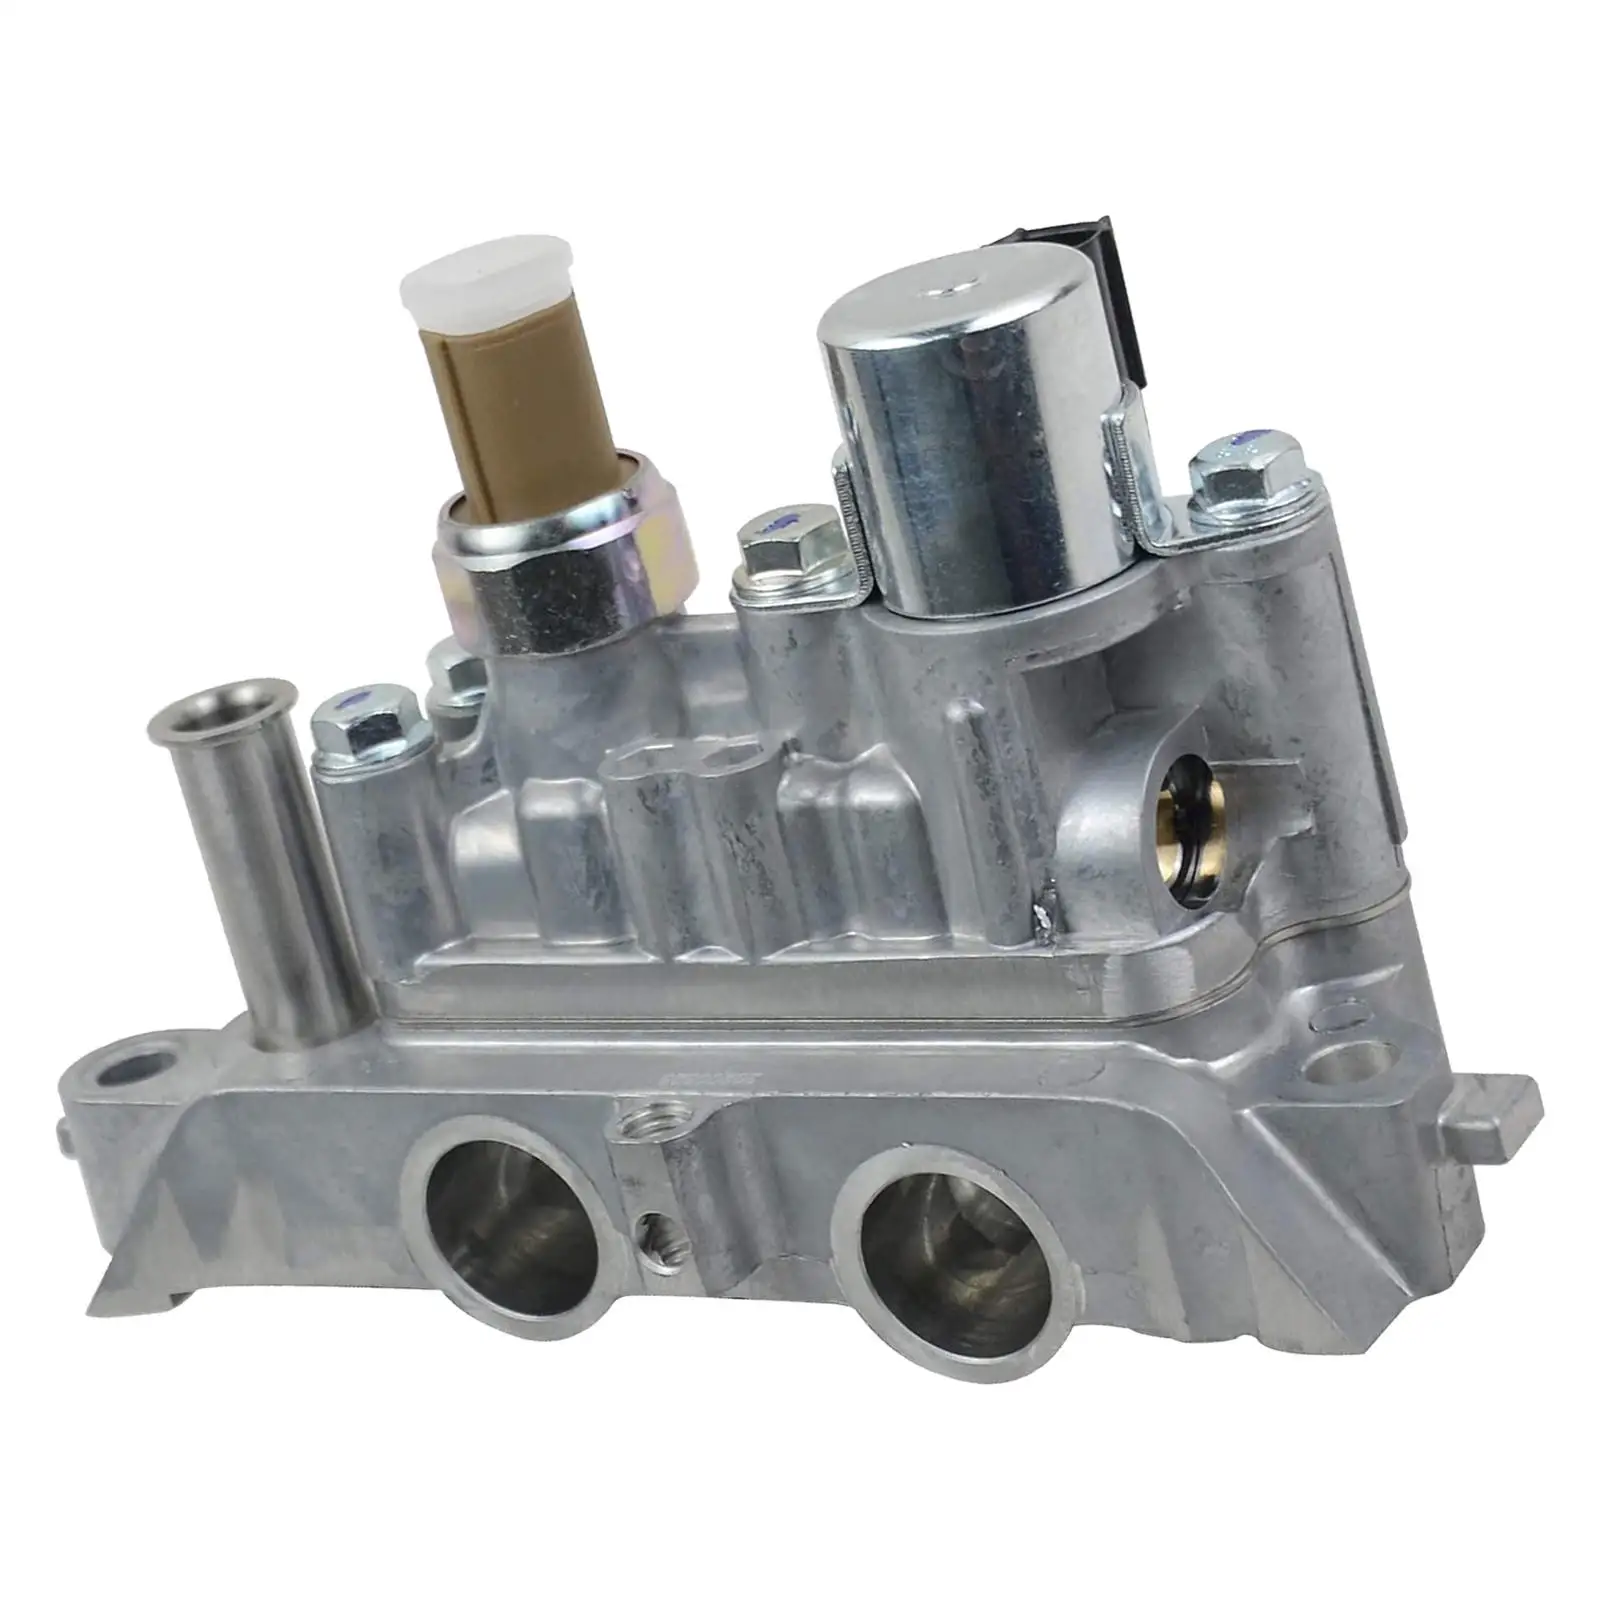 

Клапан управления маслом двигателя автомобиля Valvetrain, внутренние детали, механическая стабильность 15810-R70-A04, подходит для Acura RDX 13-15